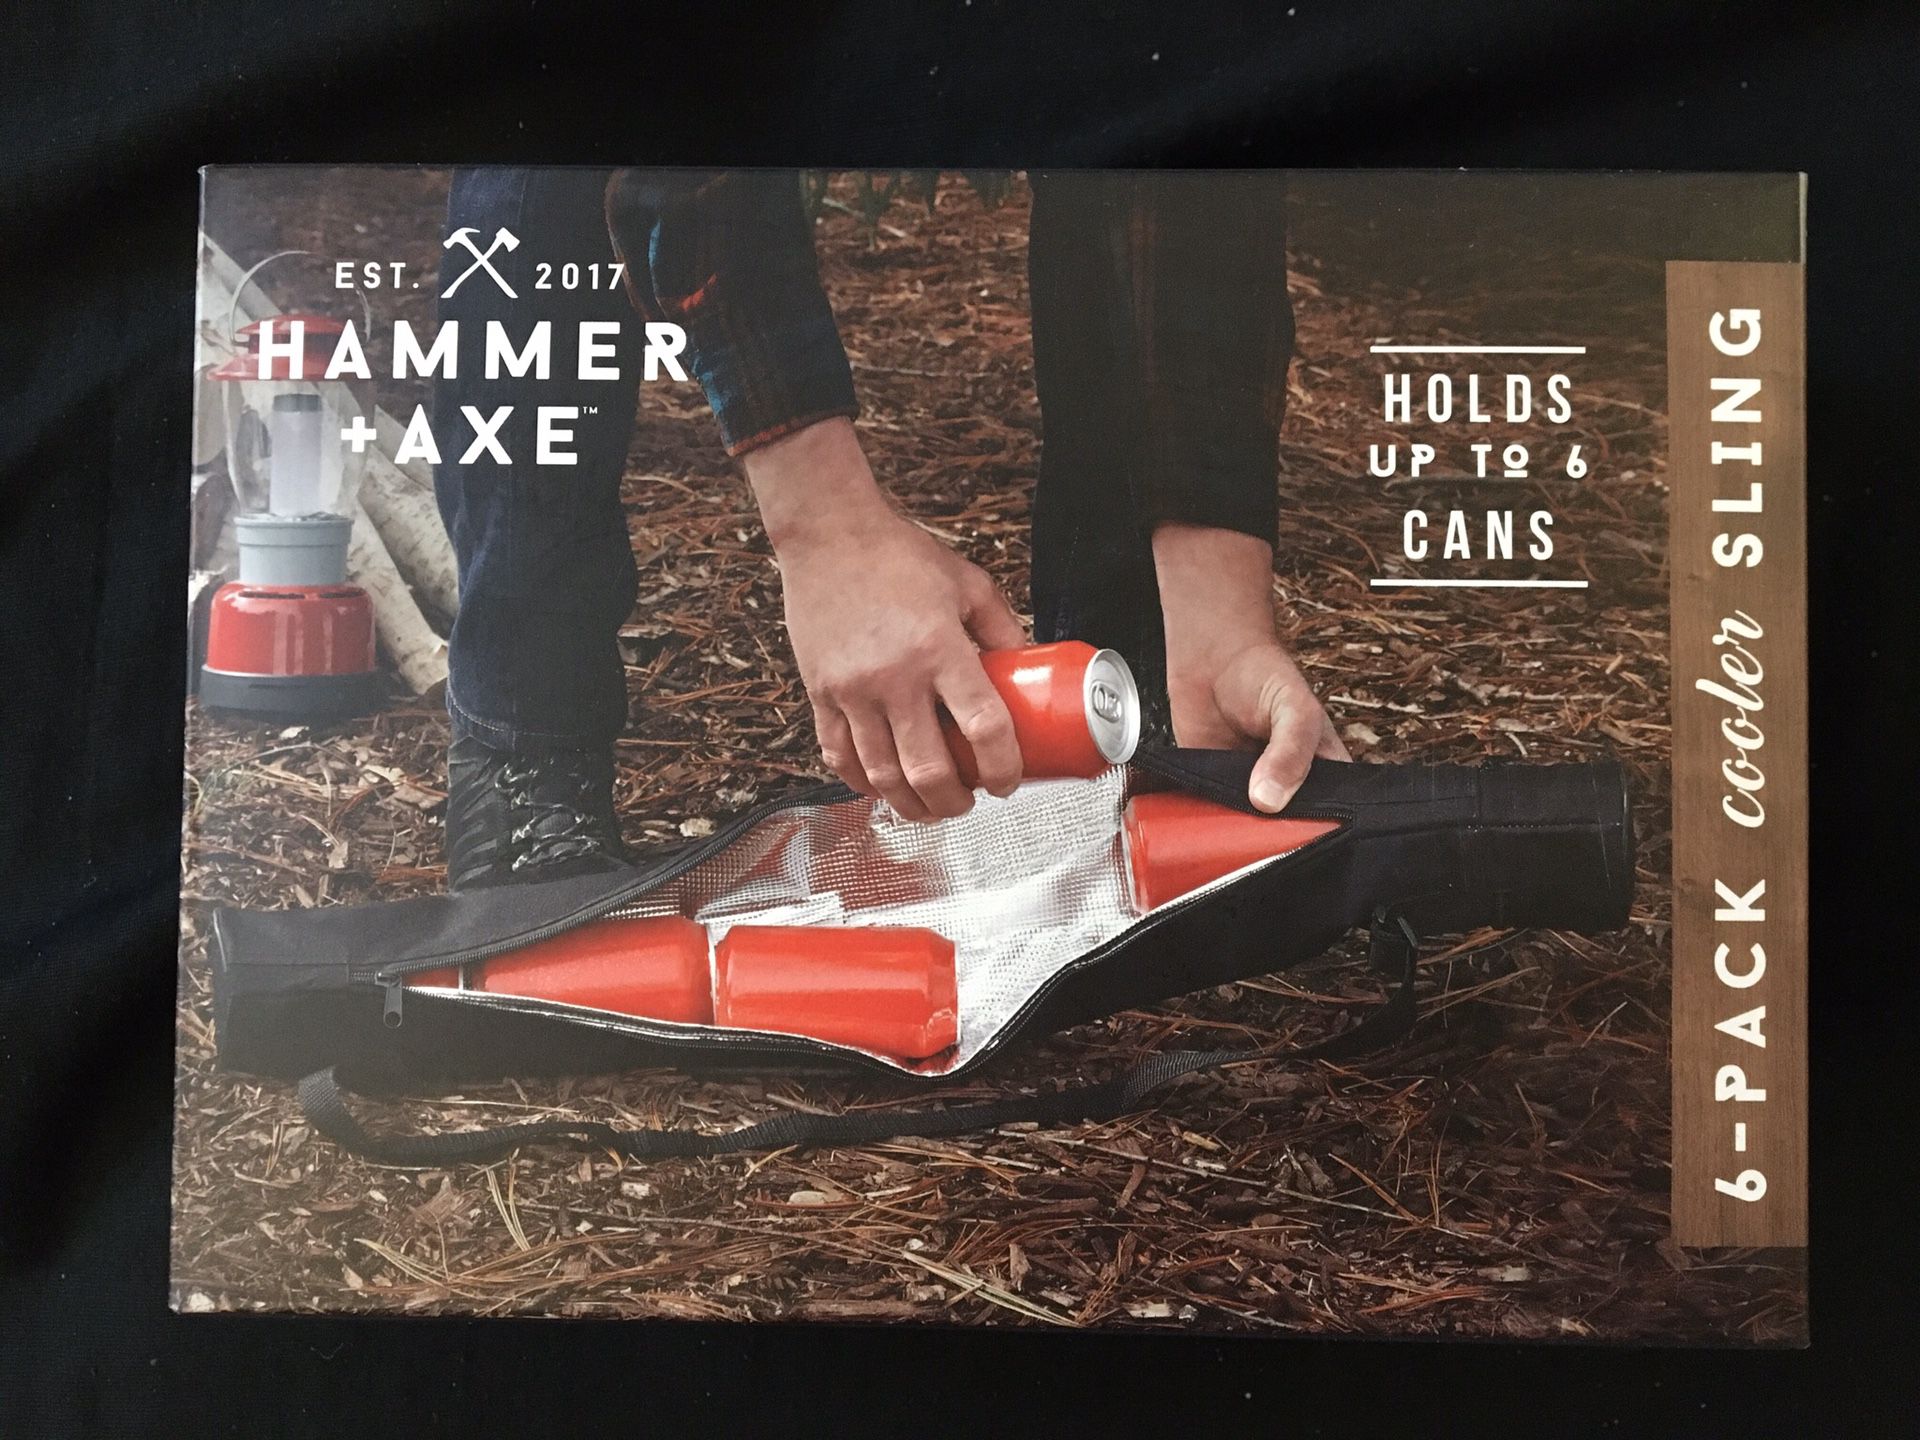 Hammer+Axe 6pack cooler sling